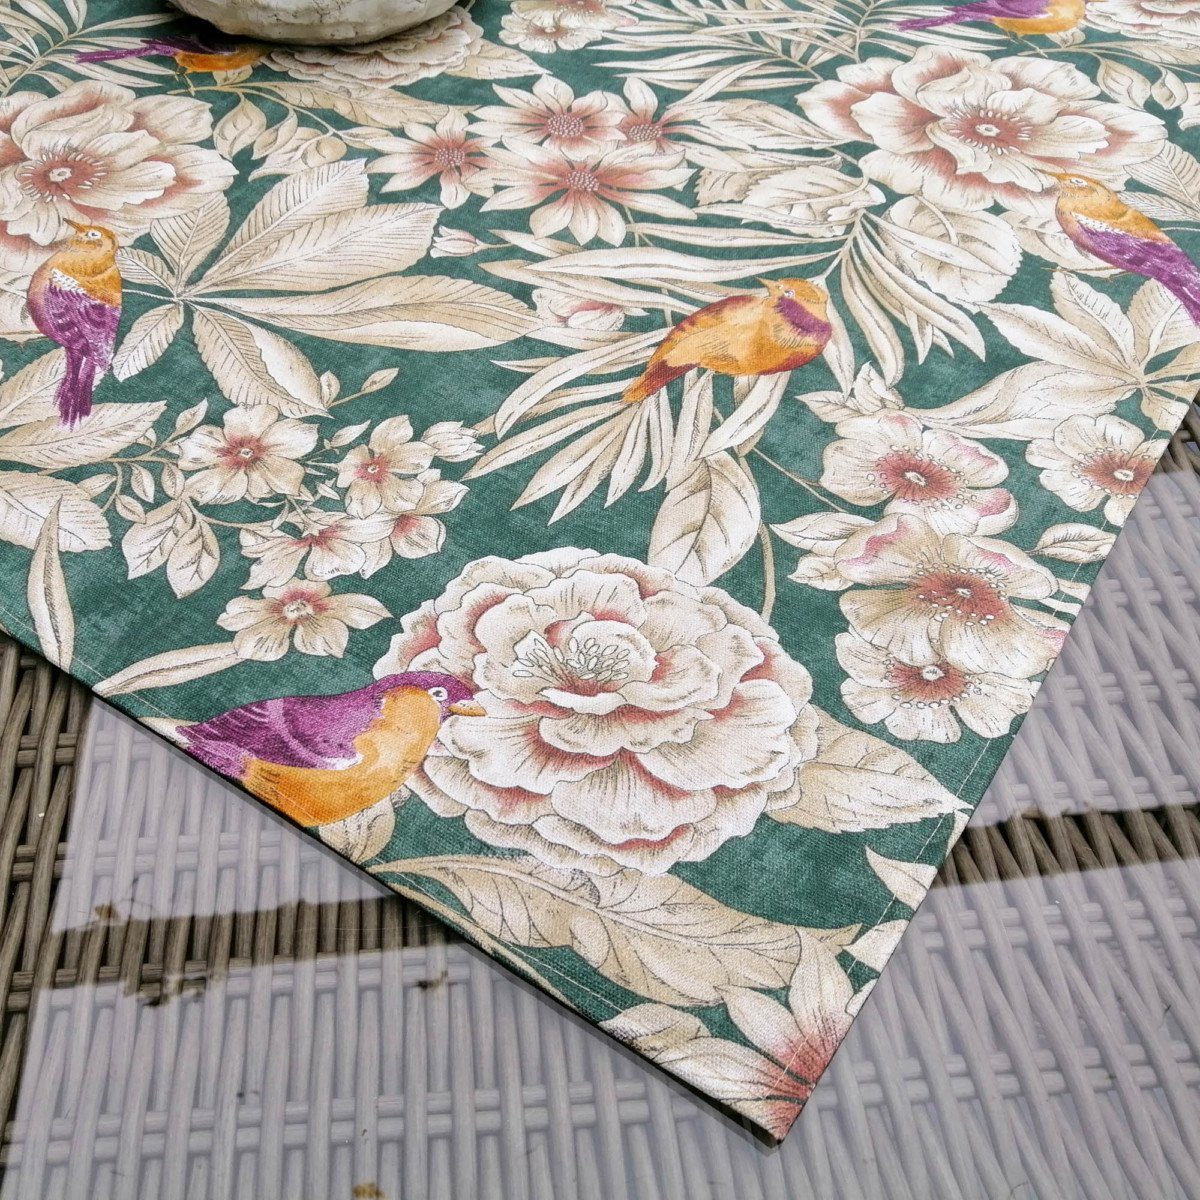 beschichtete Mit Blumenparadies Baumwolle: Grün dekoriert Tischdecke Liebe Tischdecke